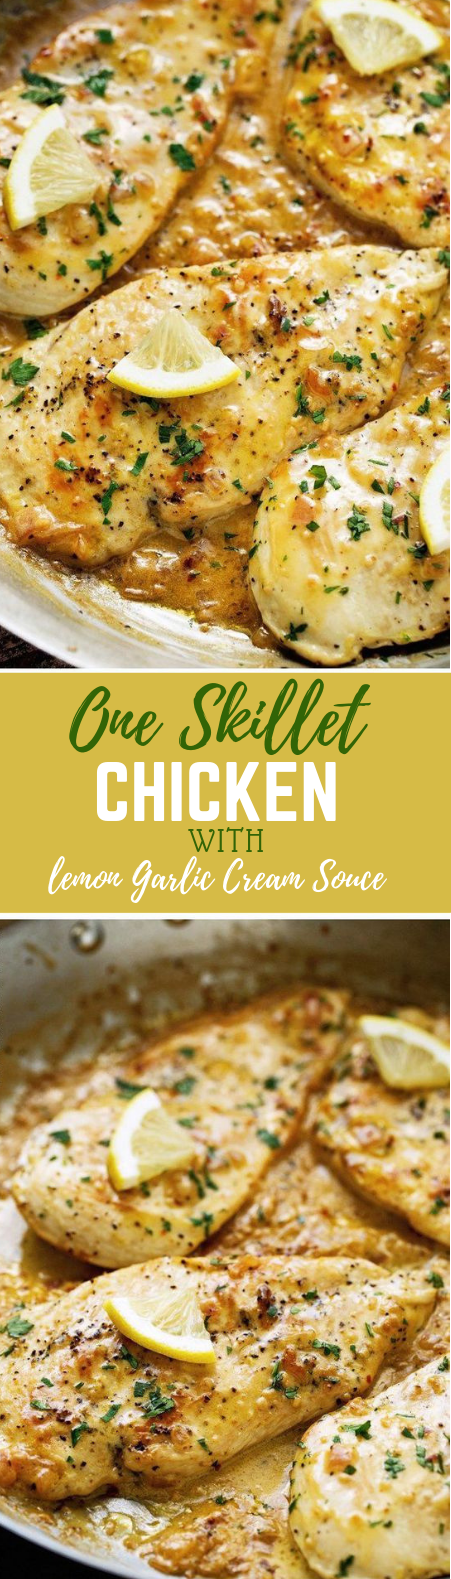 ONE SKILLET CHICKEN WITH LEMON GARLIC CREAM SAUCE #Dinner #Chicken